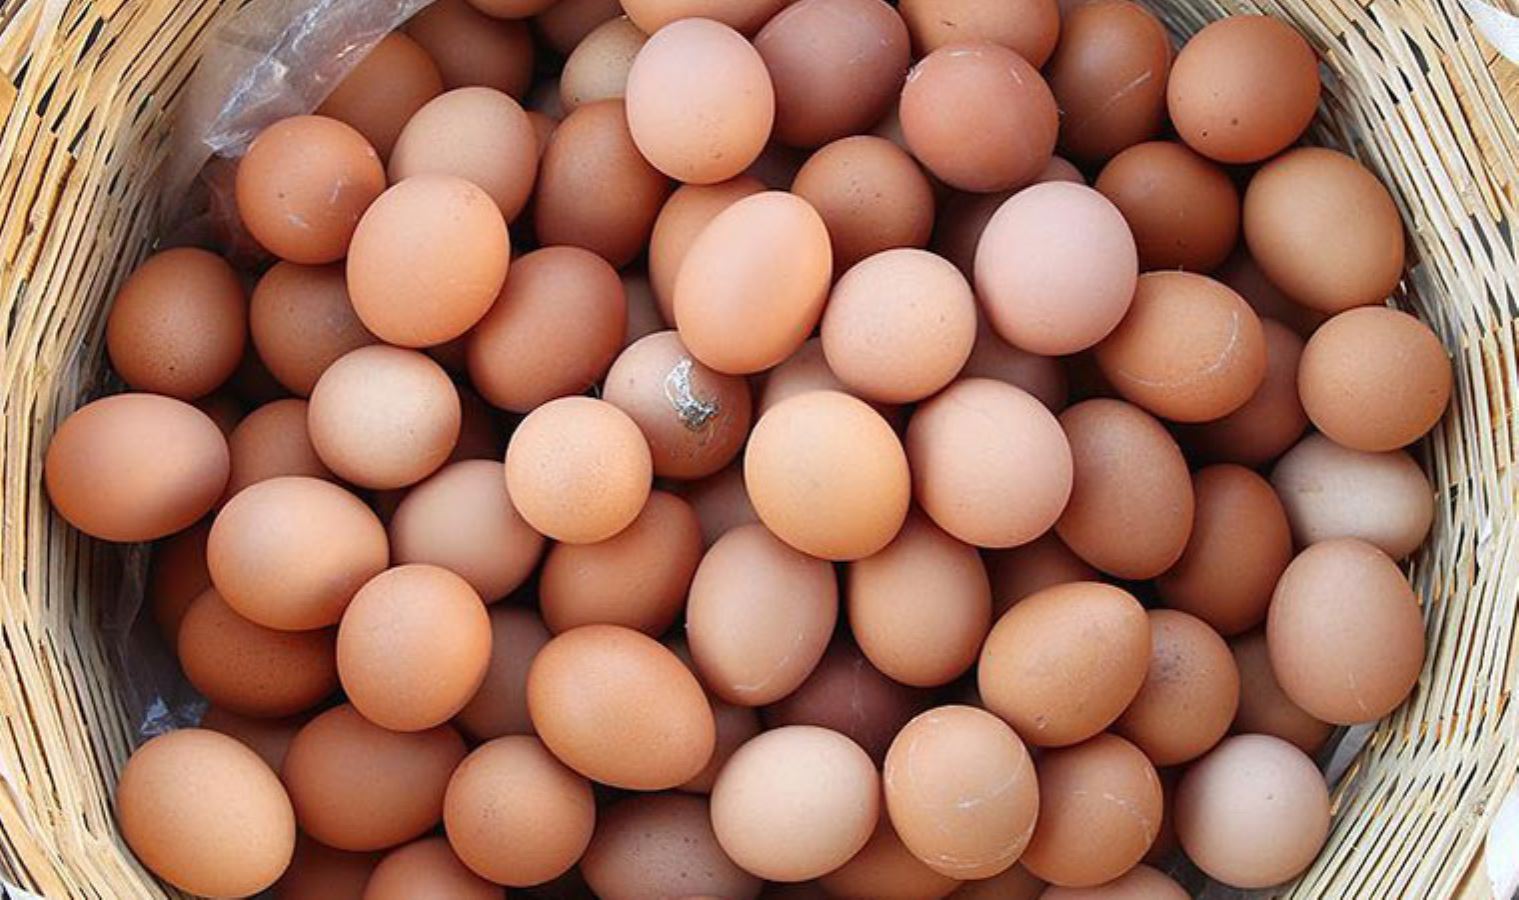 <p><strong>BİR YILDA FİYATI İKİYE KATLANDI</strong></p>
<p>Yumurta Üreticileri Merkez Birliği’nin (Yum-Bir) bugün yayımladığı fiyat listesine göre Katma Değer Vergisi (KDV) hariç büyük boy yumurtanın fiyatı 1 liradan 1 lira 10 kuruşa, 90 kuruş olan orta boy yumurtanın fiyatı ise 1 liraya çıktı. Büyük boy yumurtada artış yüzde 10 olurken orta boyda fiyat artışı yüzde 12,5 olarak gerçekleşti. Yum-Bir’in 16 Mayıs tarihli fiyat bülteninde KDV’siz fiyatlar yer alıyor. Marketlerde ise bugün büyük boy yumurtanın adet fiyatı 1,5 lirayı geçti.</p>
<p>Açıklanan toptan fiyatlar market ve bölgelere göre değişim gösteriyor.</p>